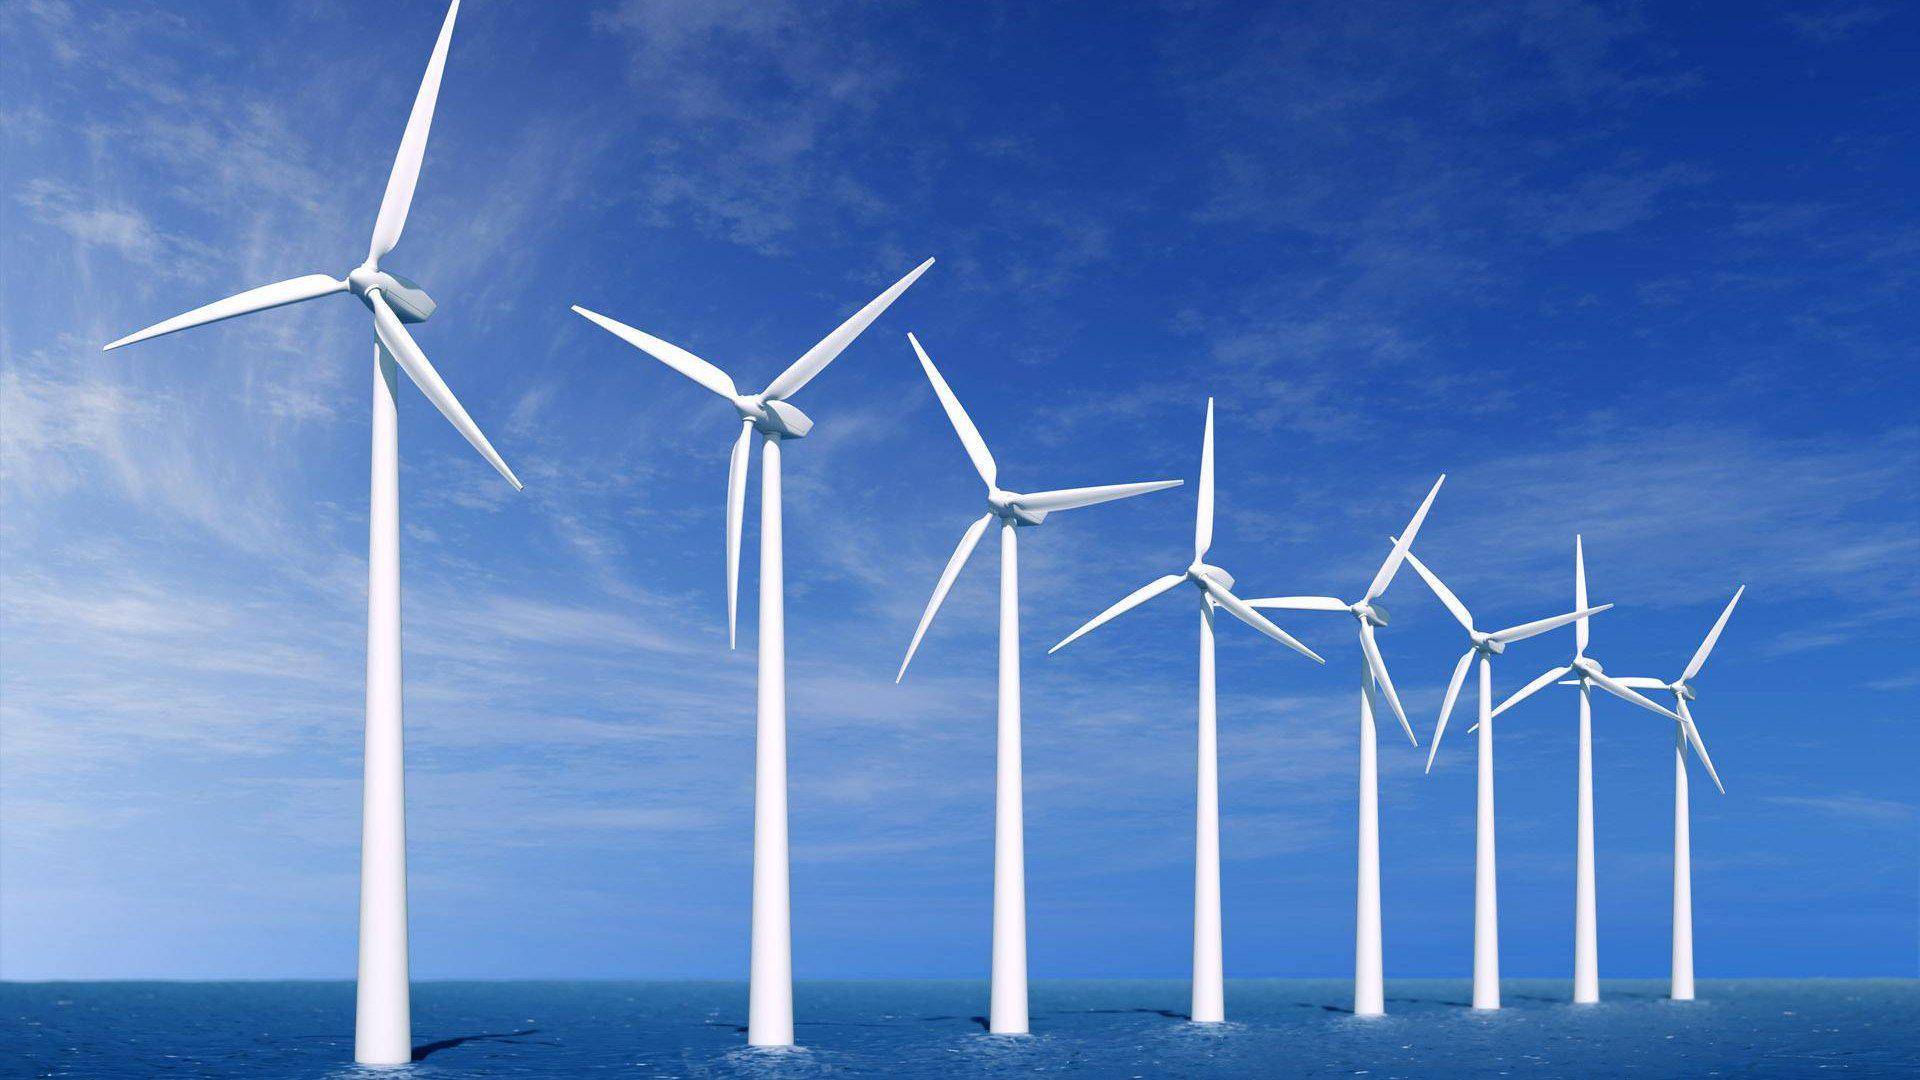 海上风电成为越南发展新能源的双重机遇